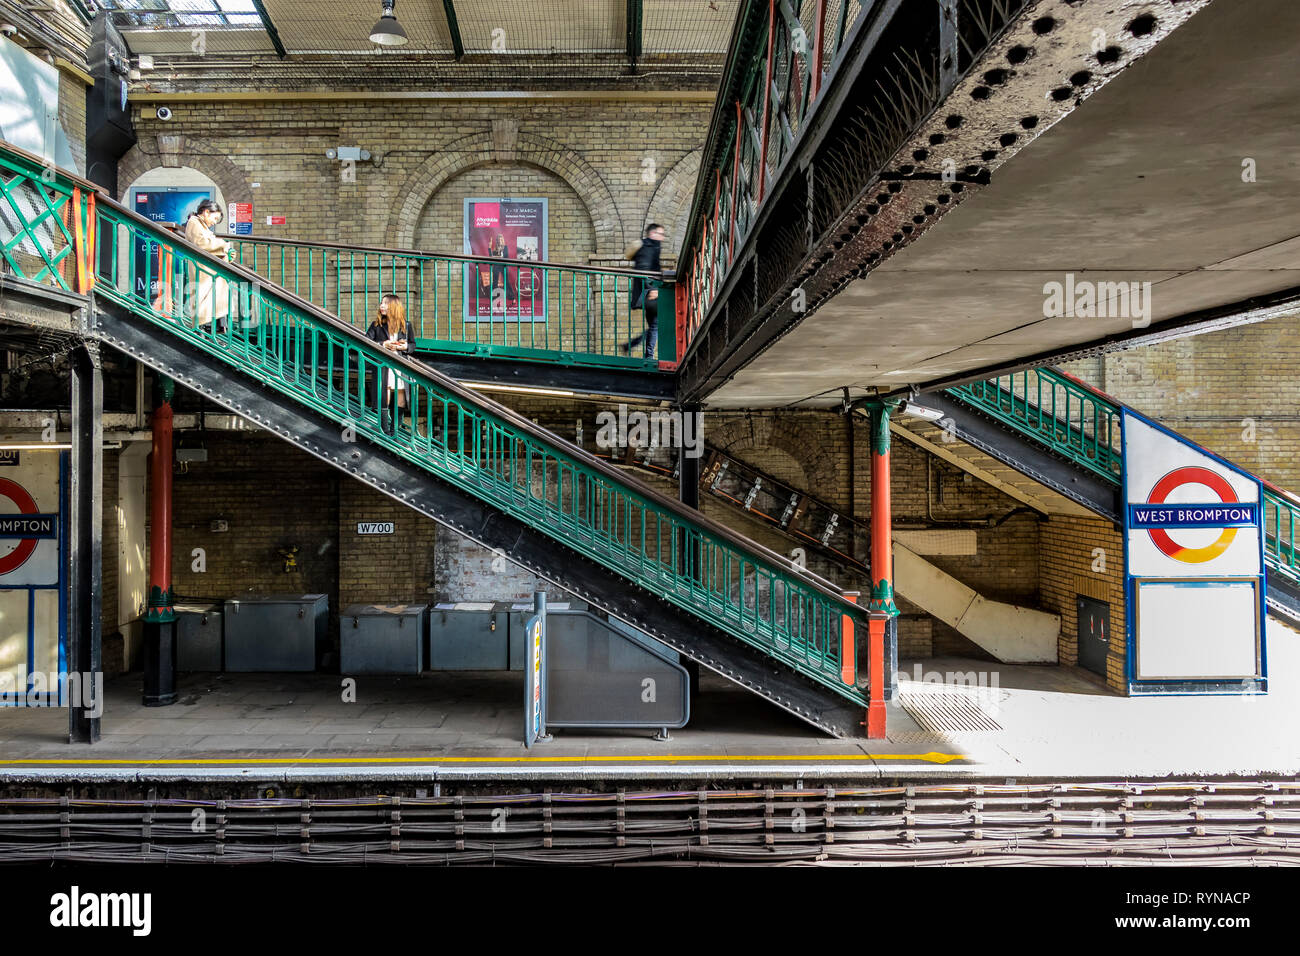 Escaliers verts menant à la plate-forme à la station de métro West Brompton, dans le sud-ouest de Londres, Londres, Royaume-Uni Banque D'Images